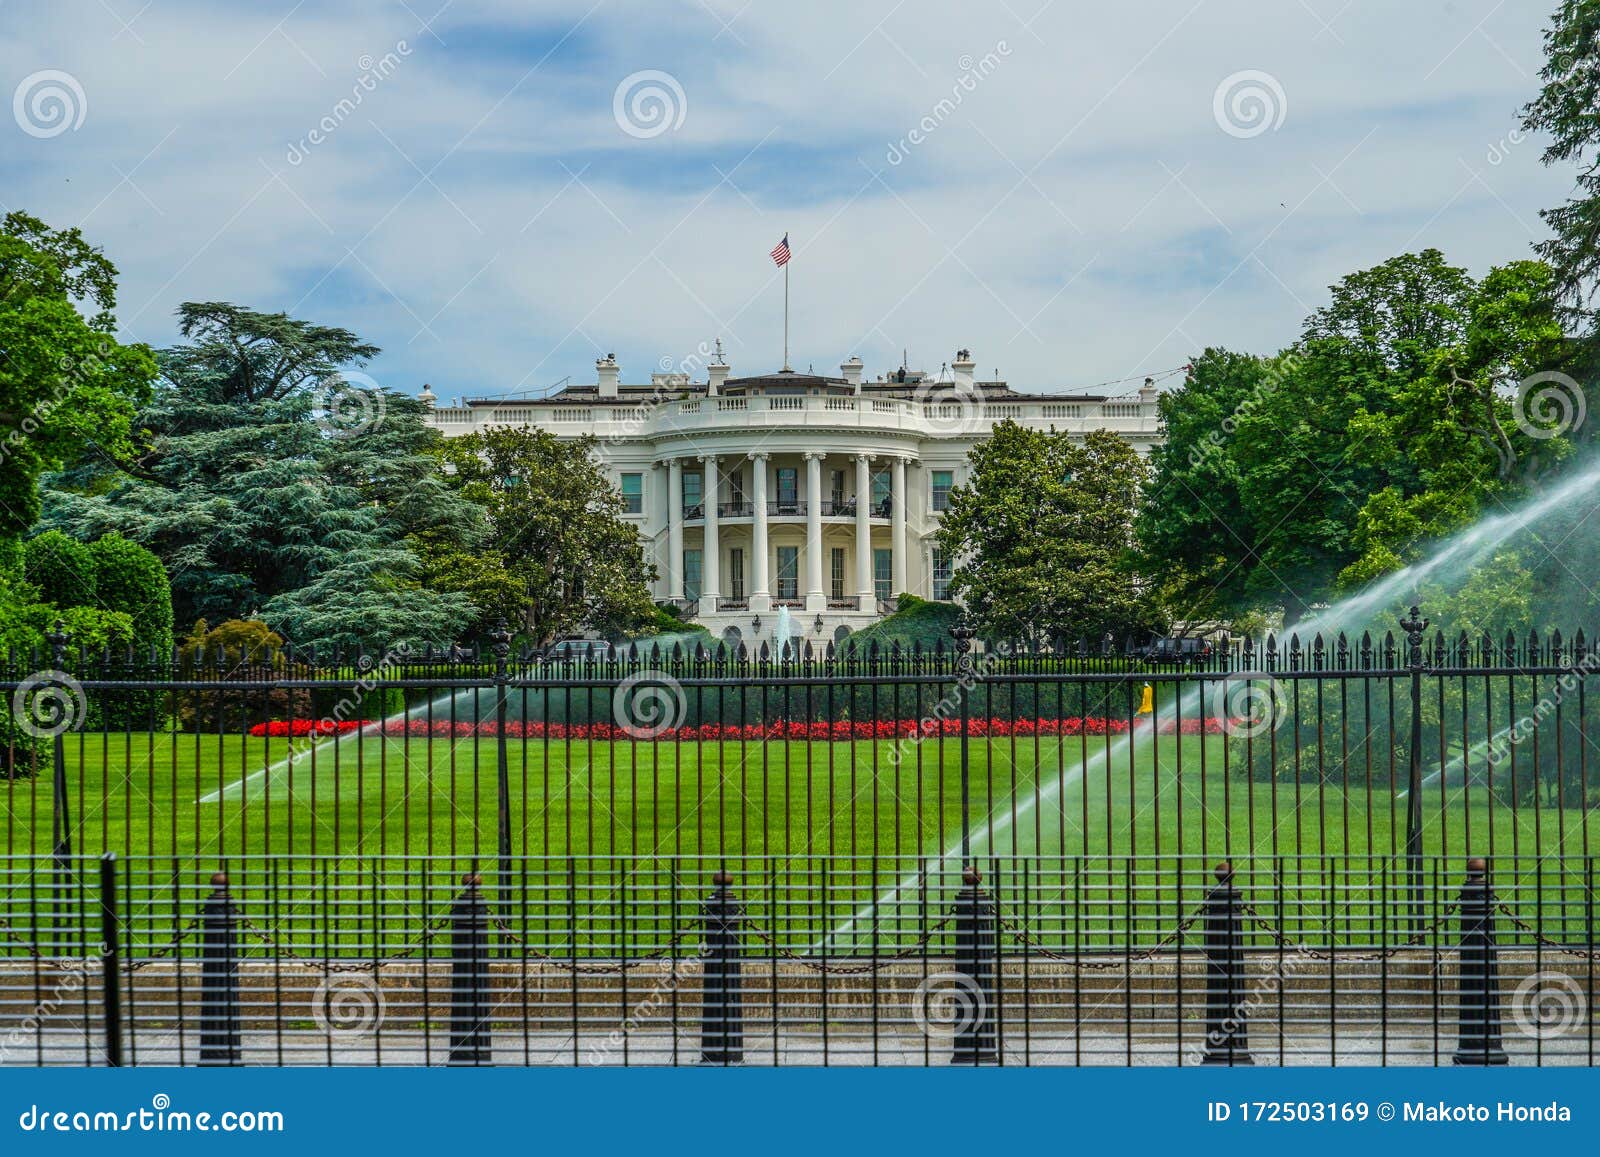 White House Washington Dc Stock Image Image Of Cage 172503169